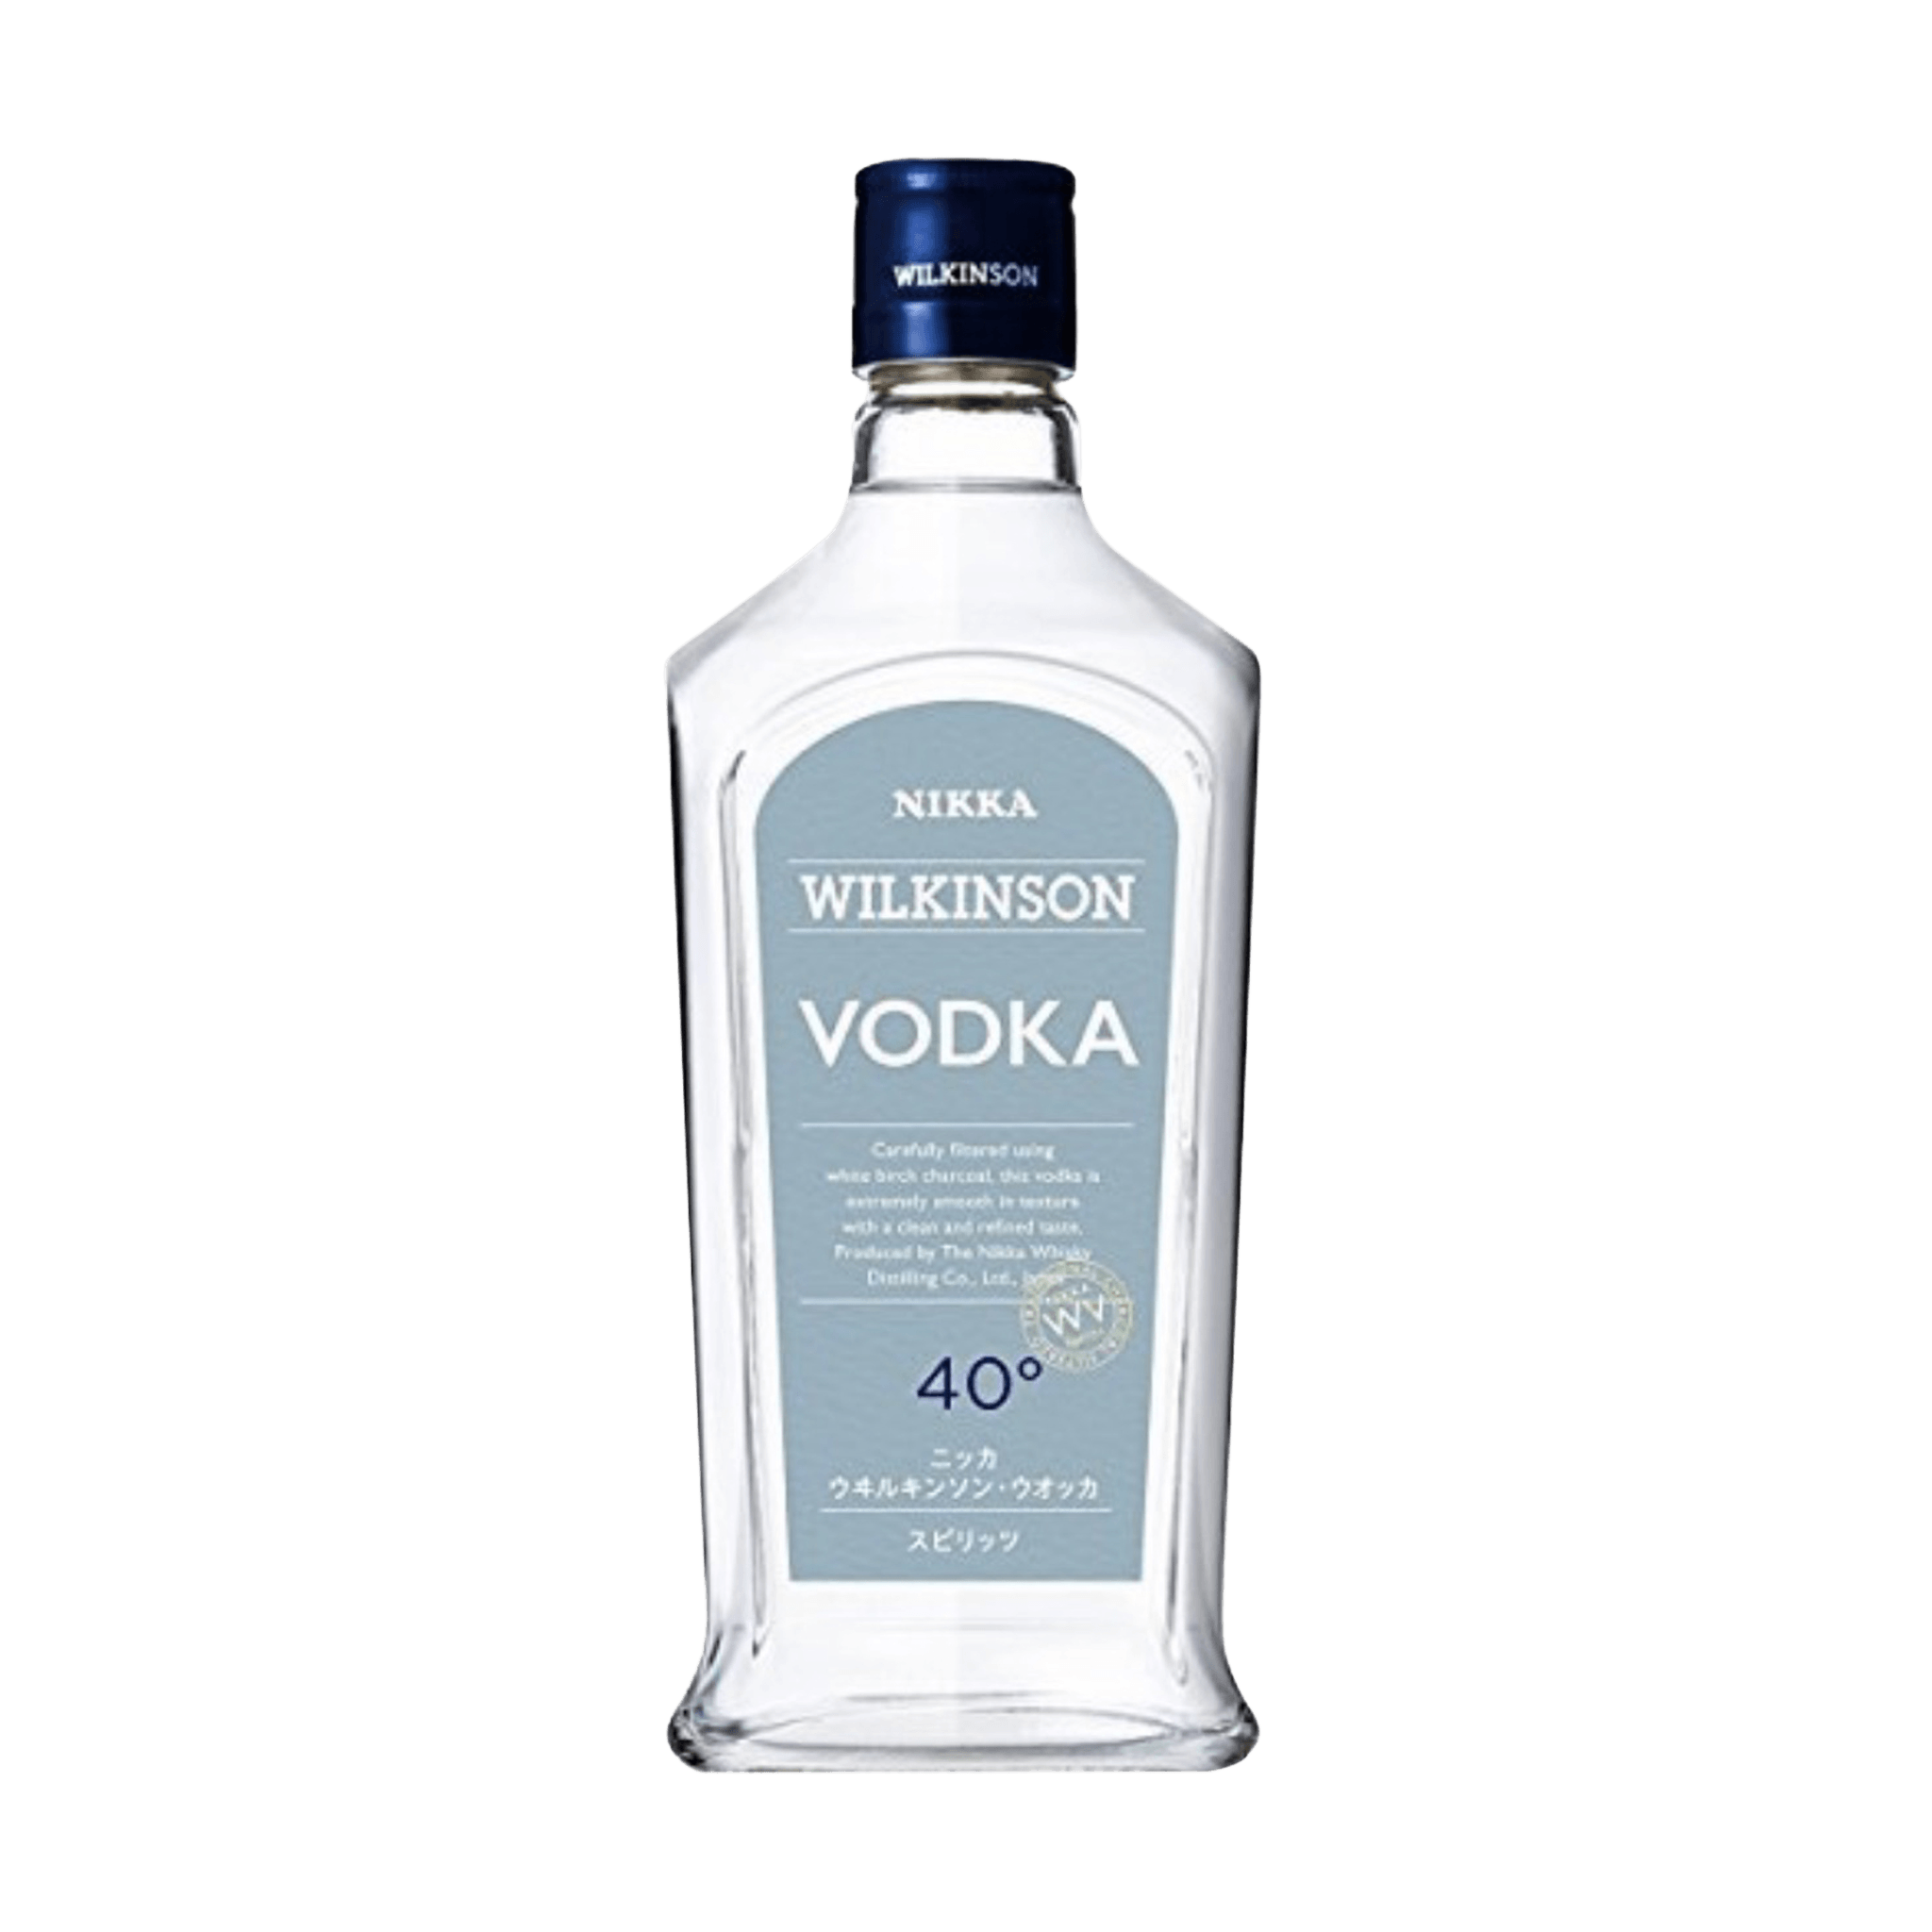 Nikka Wilkinson Vodka 700ml at ₱1199.00